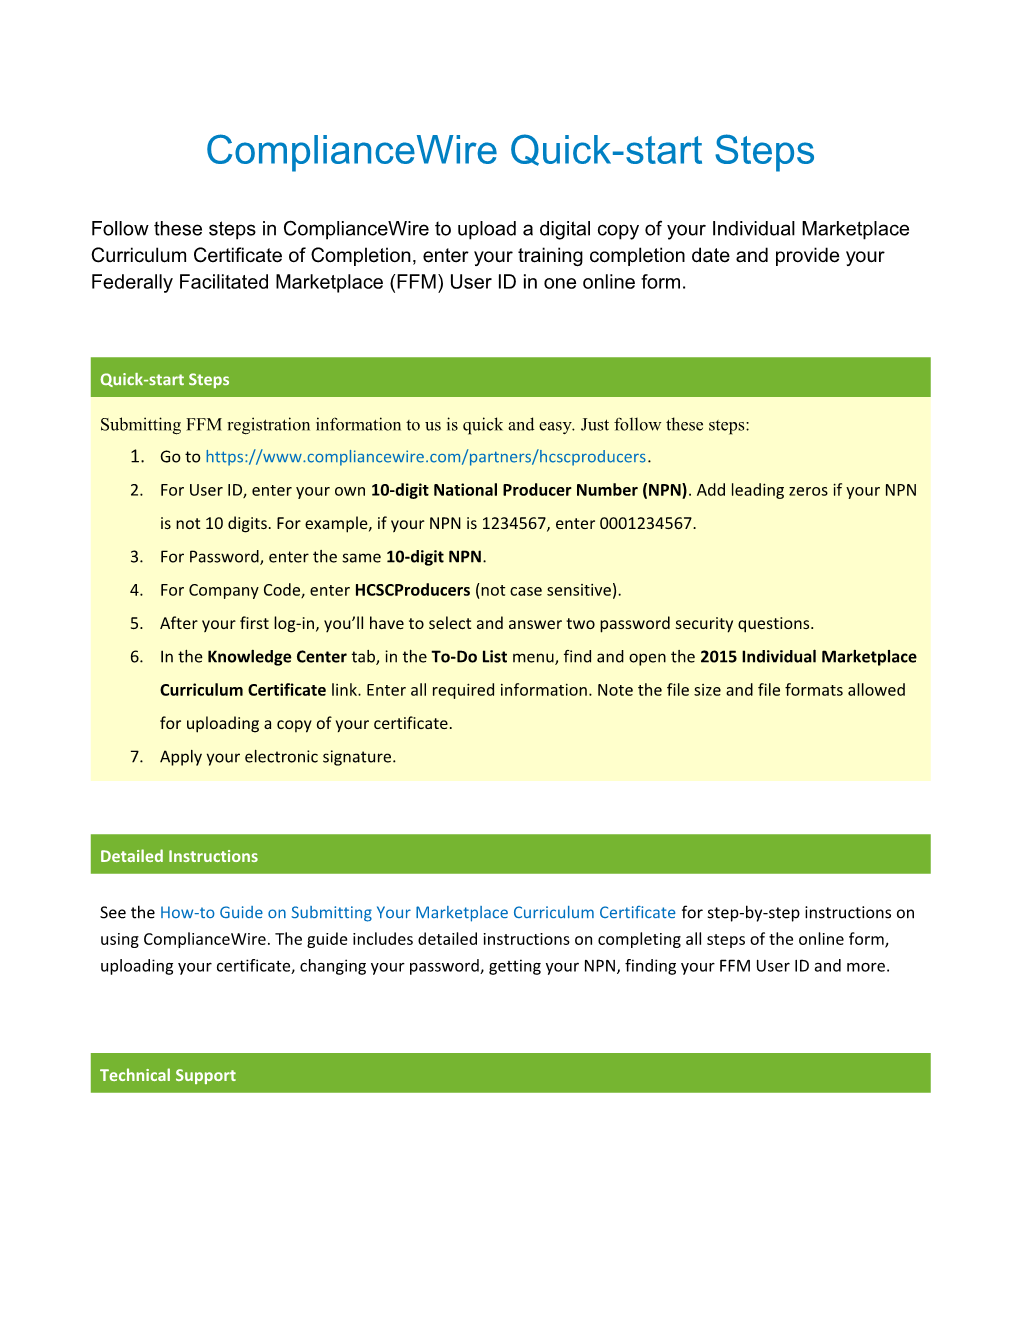 Compliancewire Quick-Start Steps